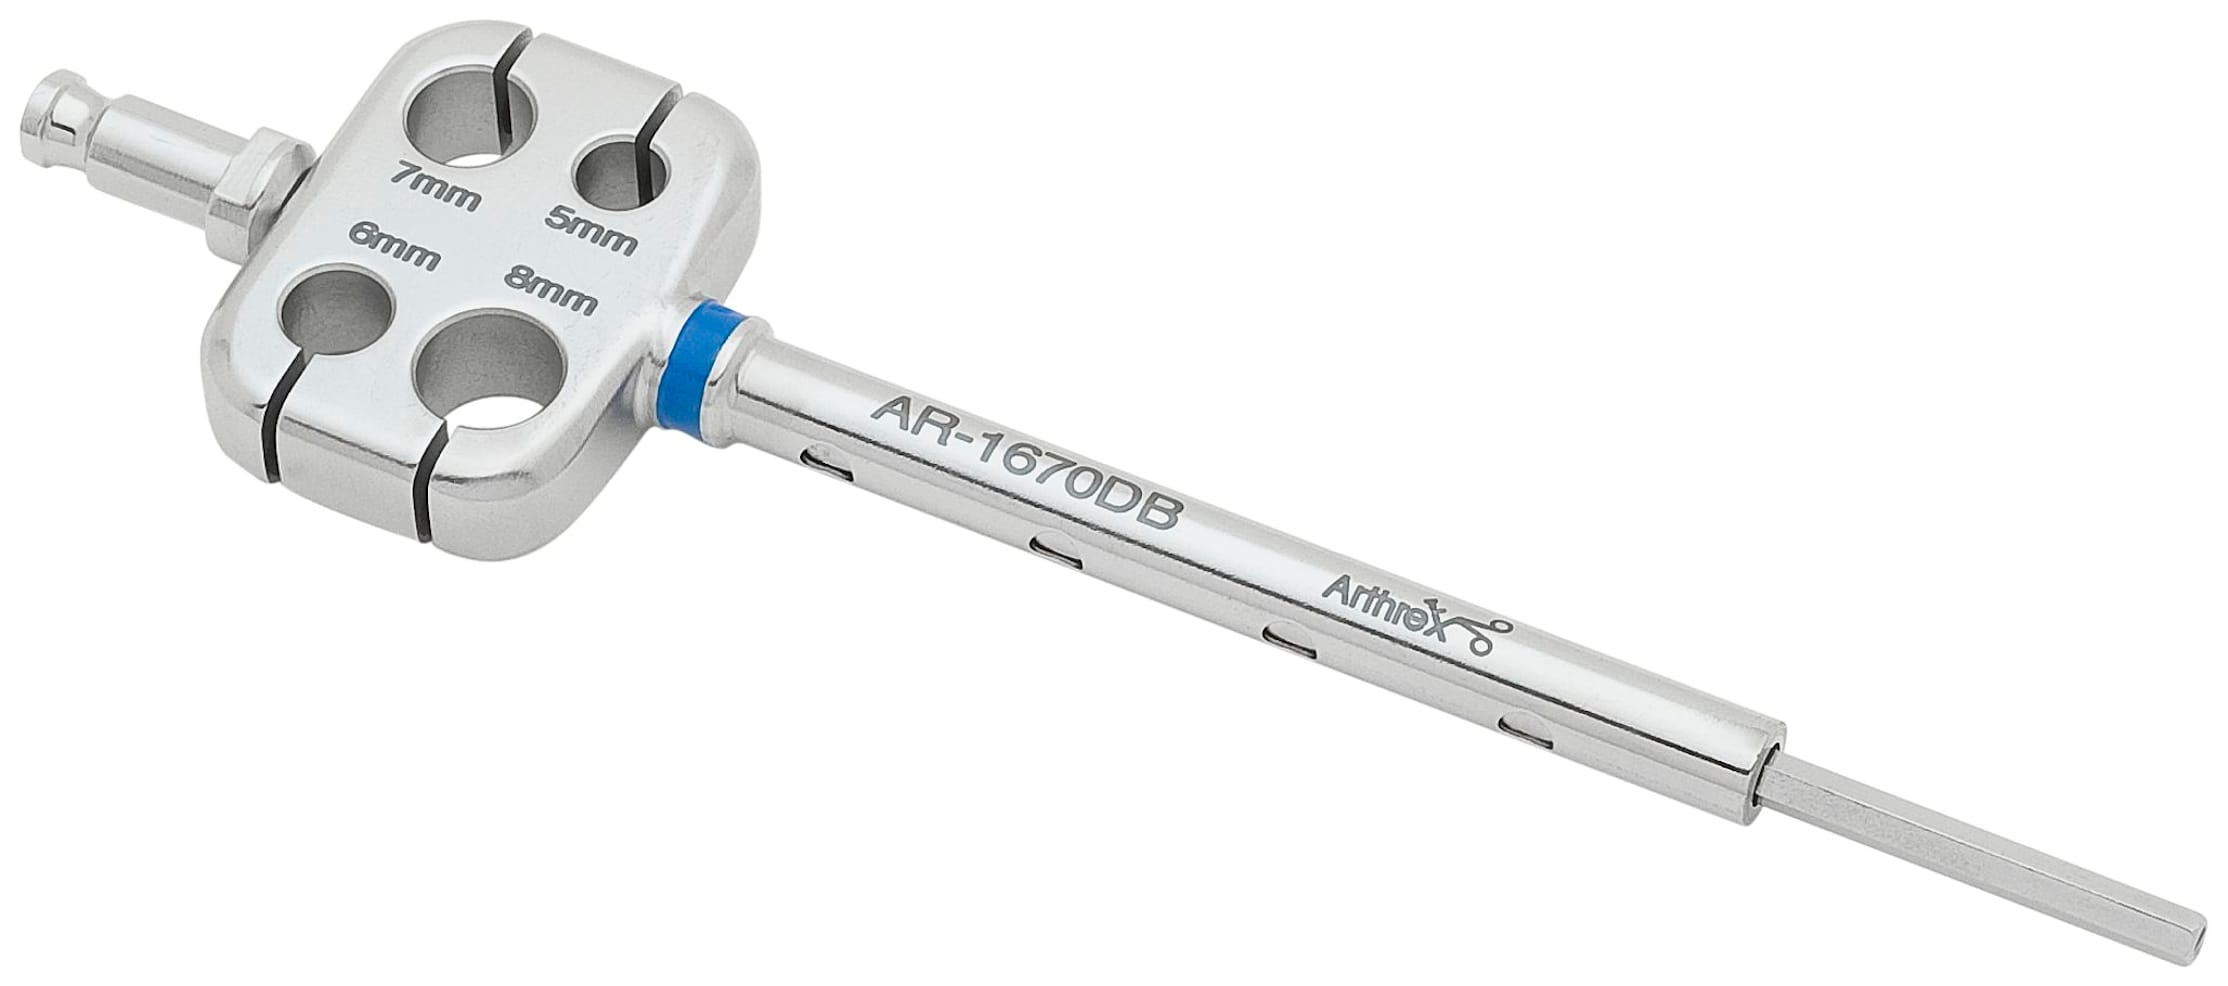 Schraubendreher für 12.0 mm Bio-Tenodesis Schraube (AR-1670B, AR-1680B)